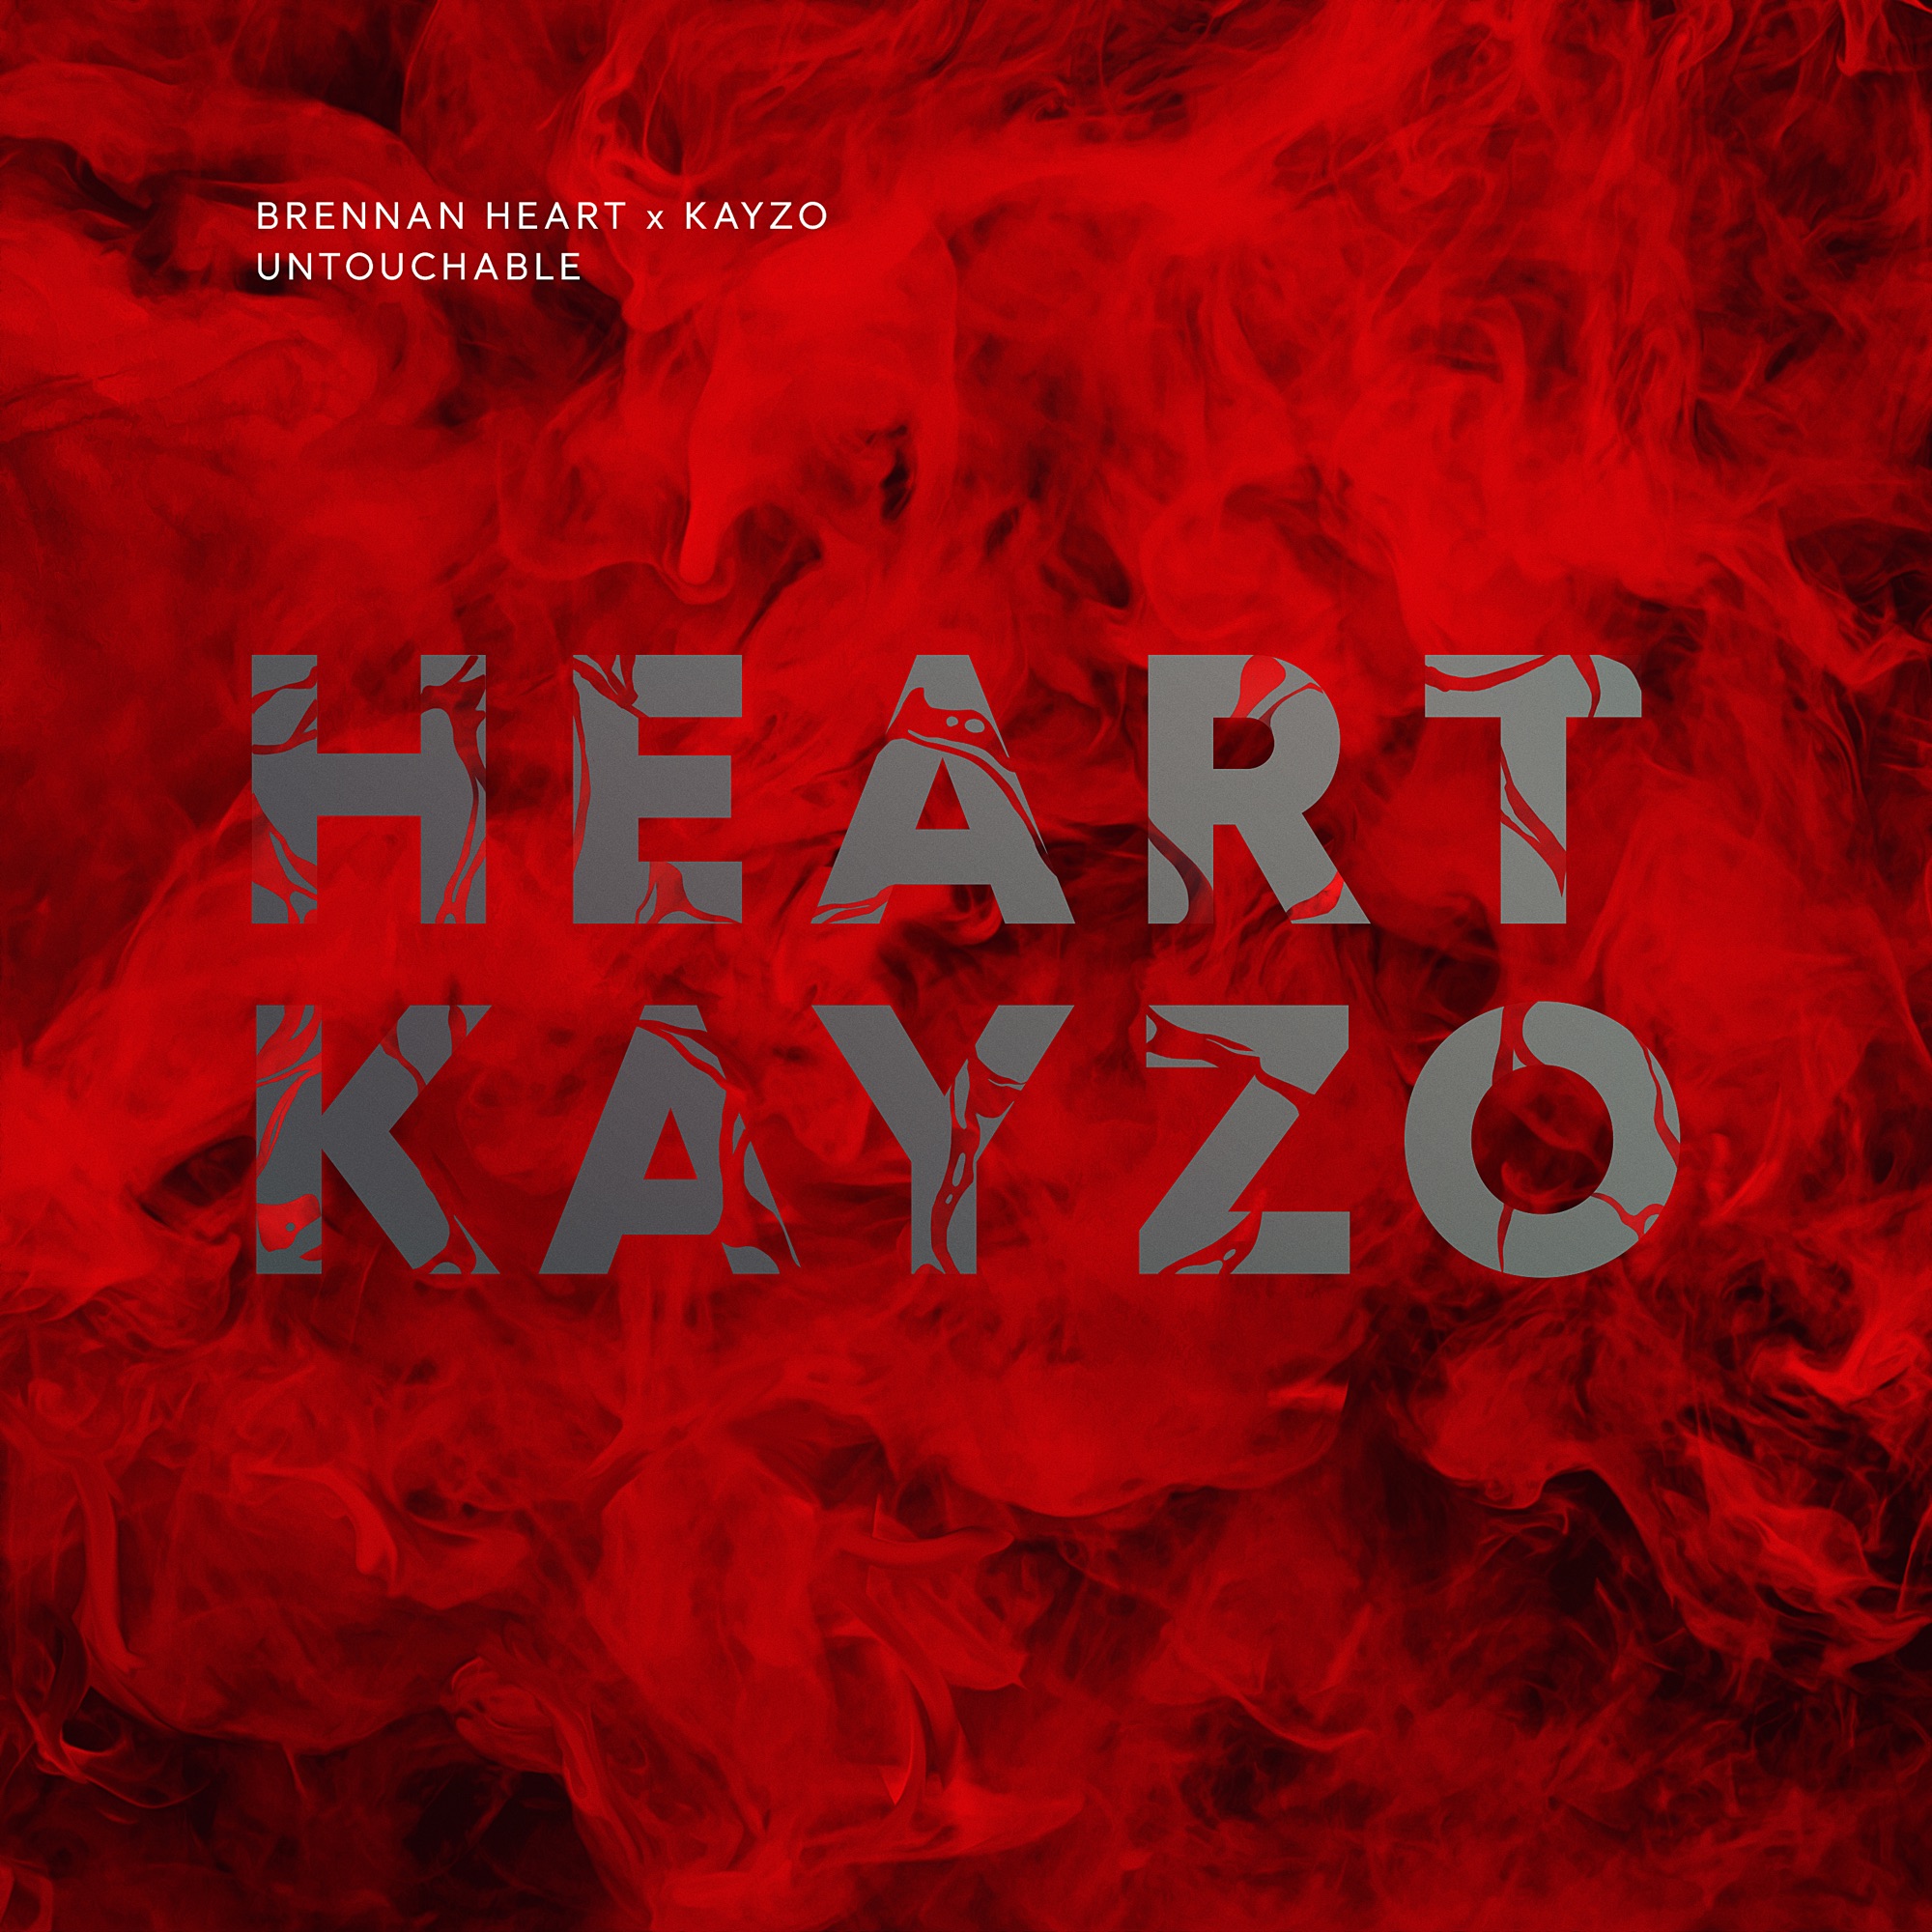 Brennan Heart & Kayzo - Untouchable - Single